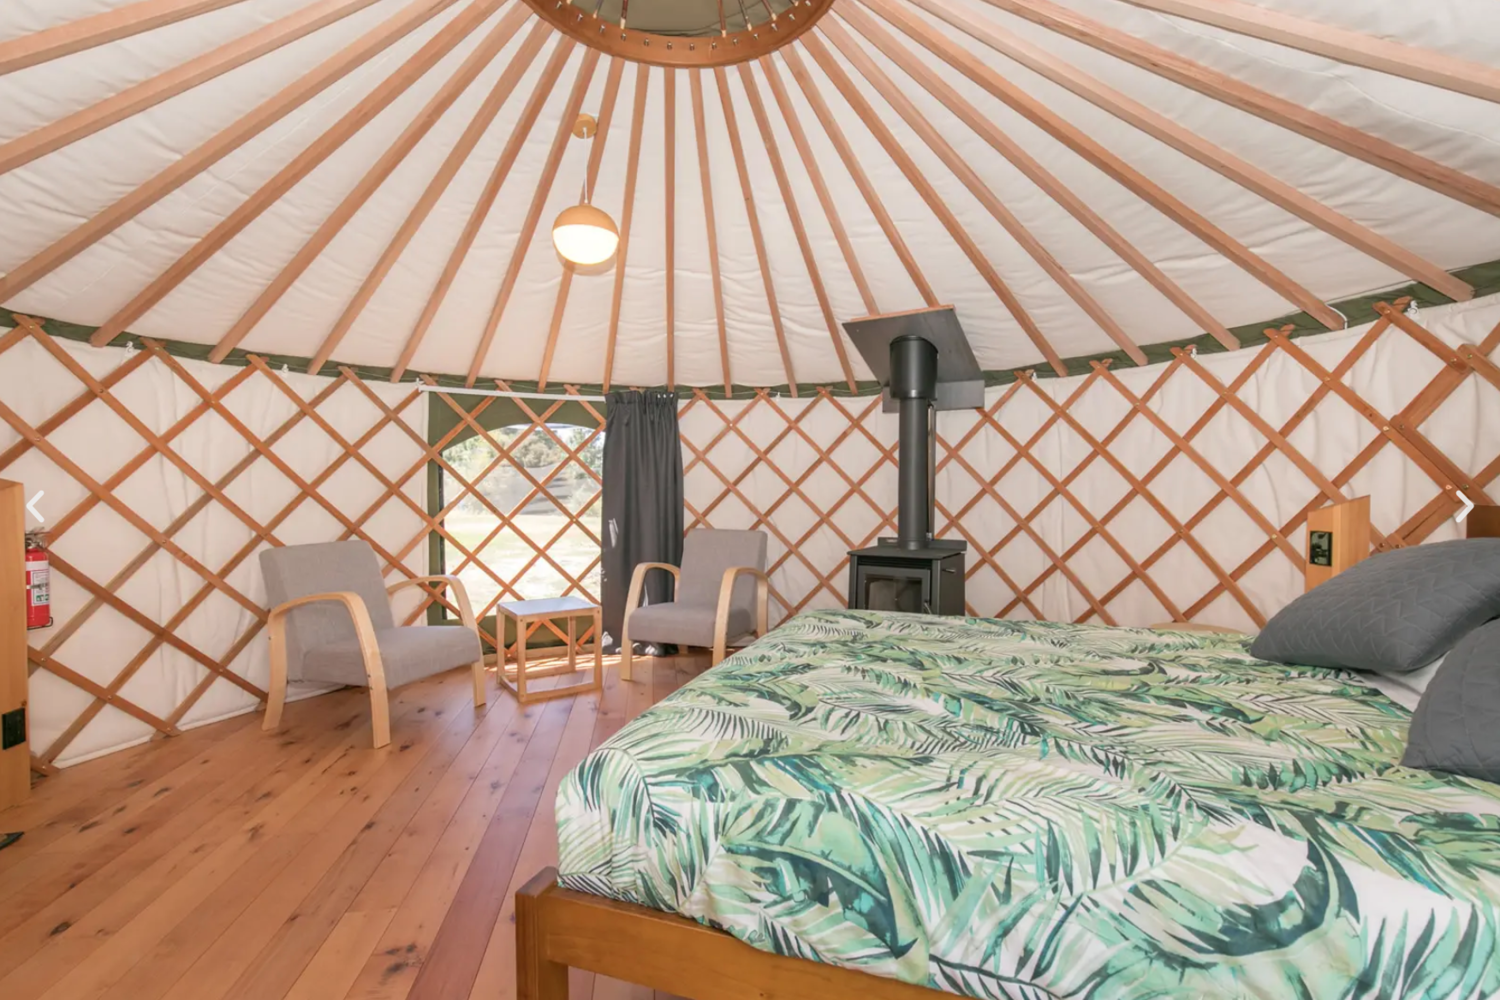 Oasis Yurt Lodge, New Zealand